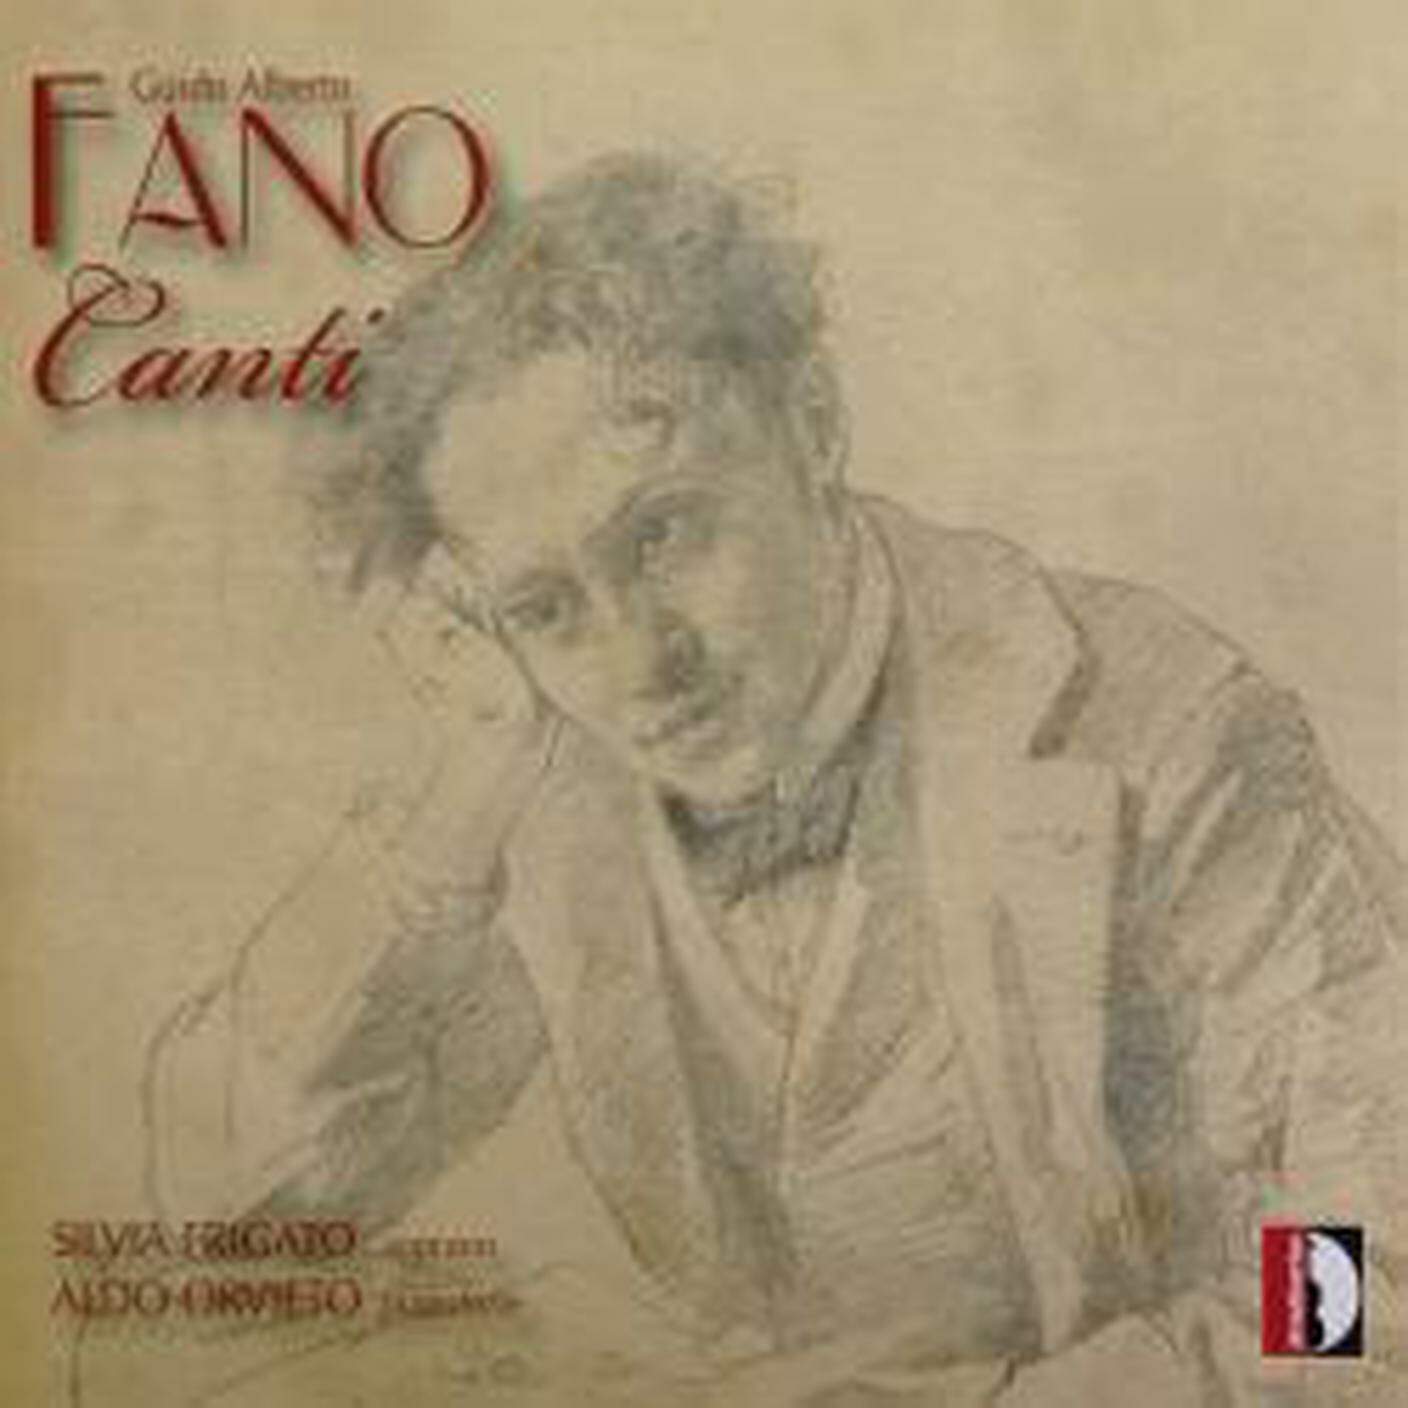 “Guido Alberto Fano - Canti” interpretato da Silvia Frigato e Aldo Orvieto, Stradivarius (dettaglio di copertina)